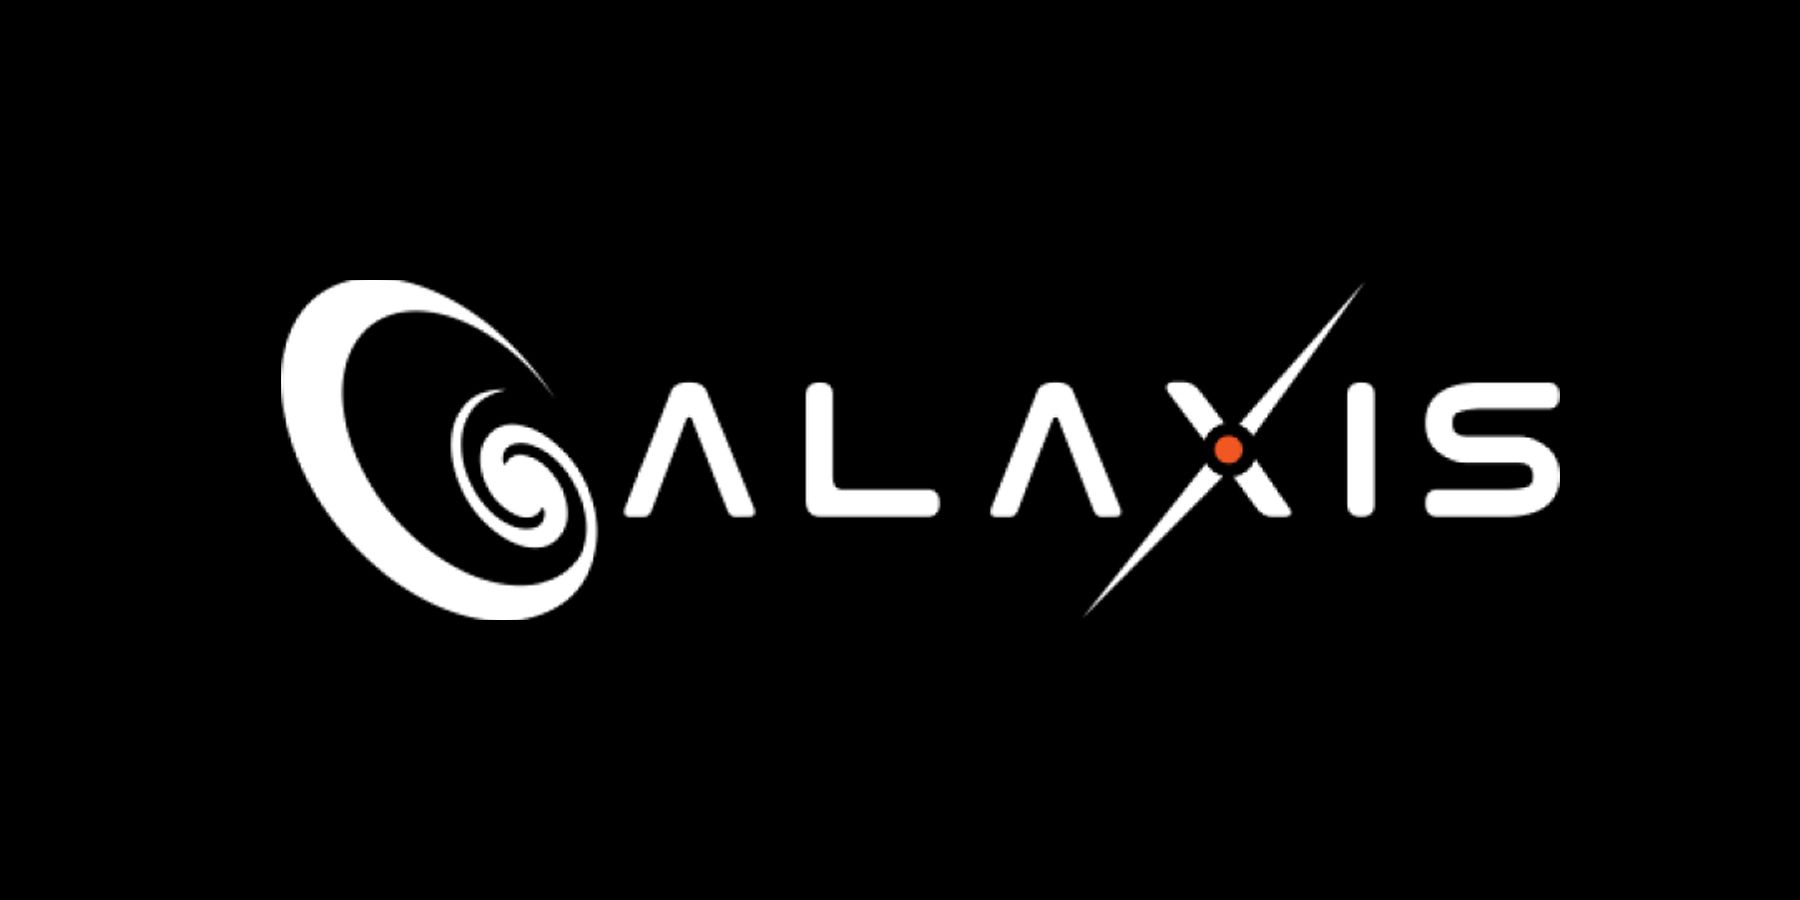 Galaxis CEO Max Gallardo განიხილავს Twitch კონკურენტი დაჩქარებული ხელშეკრულების მოდელი